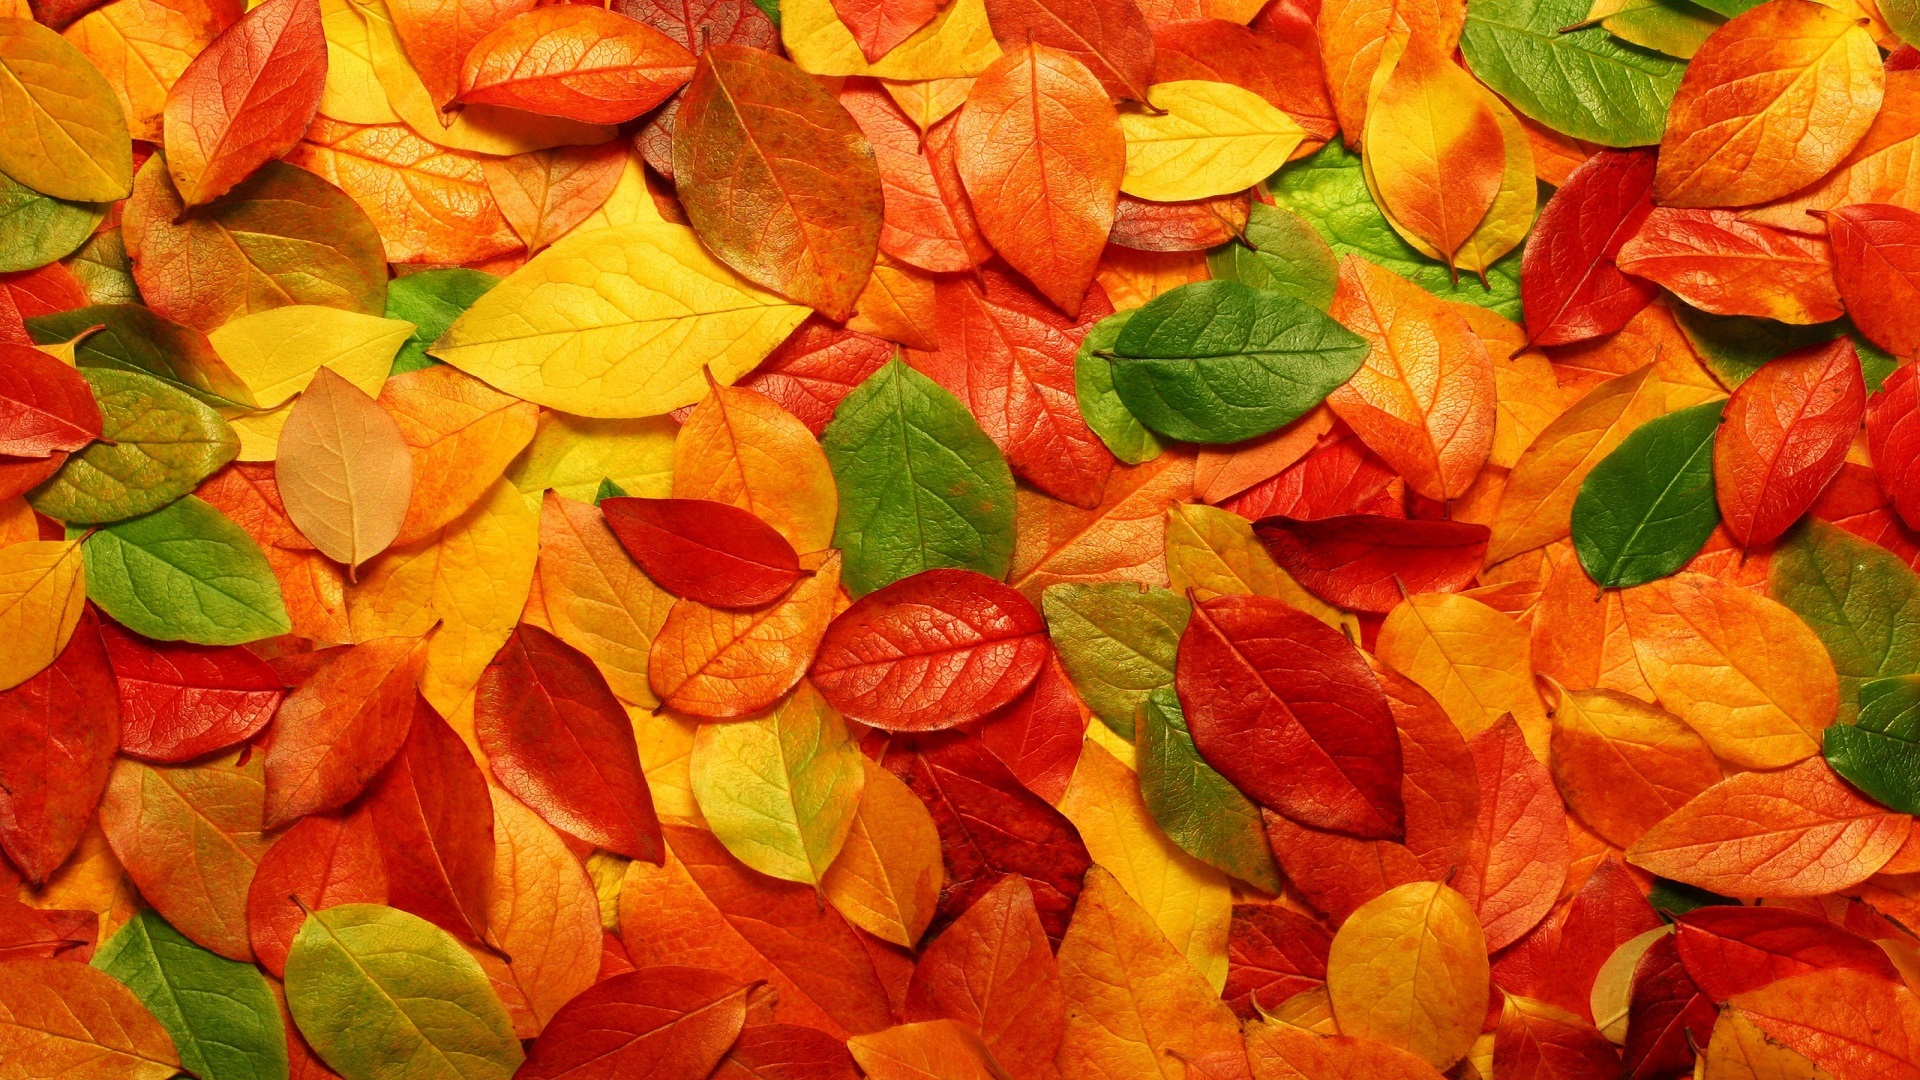 autumn desktop wallpapers the colors that we enjoy